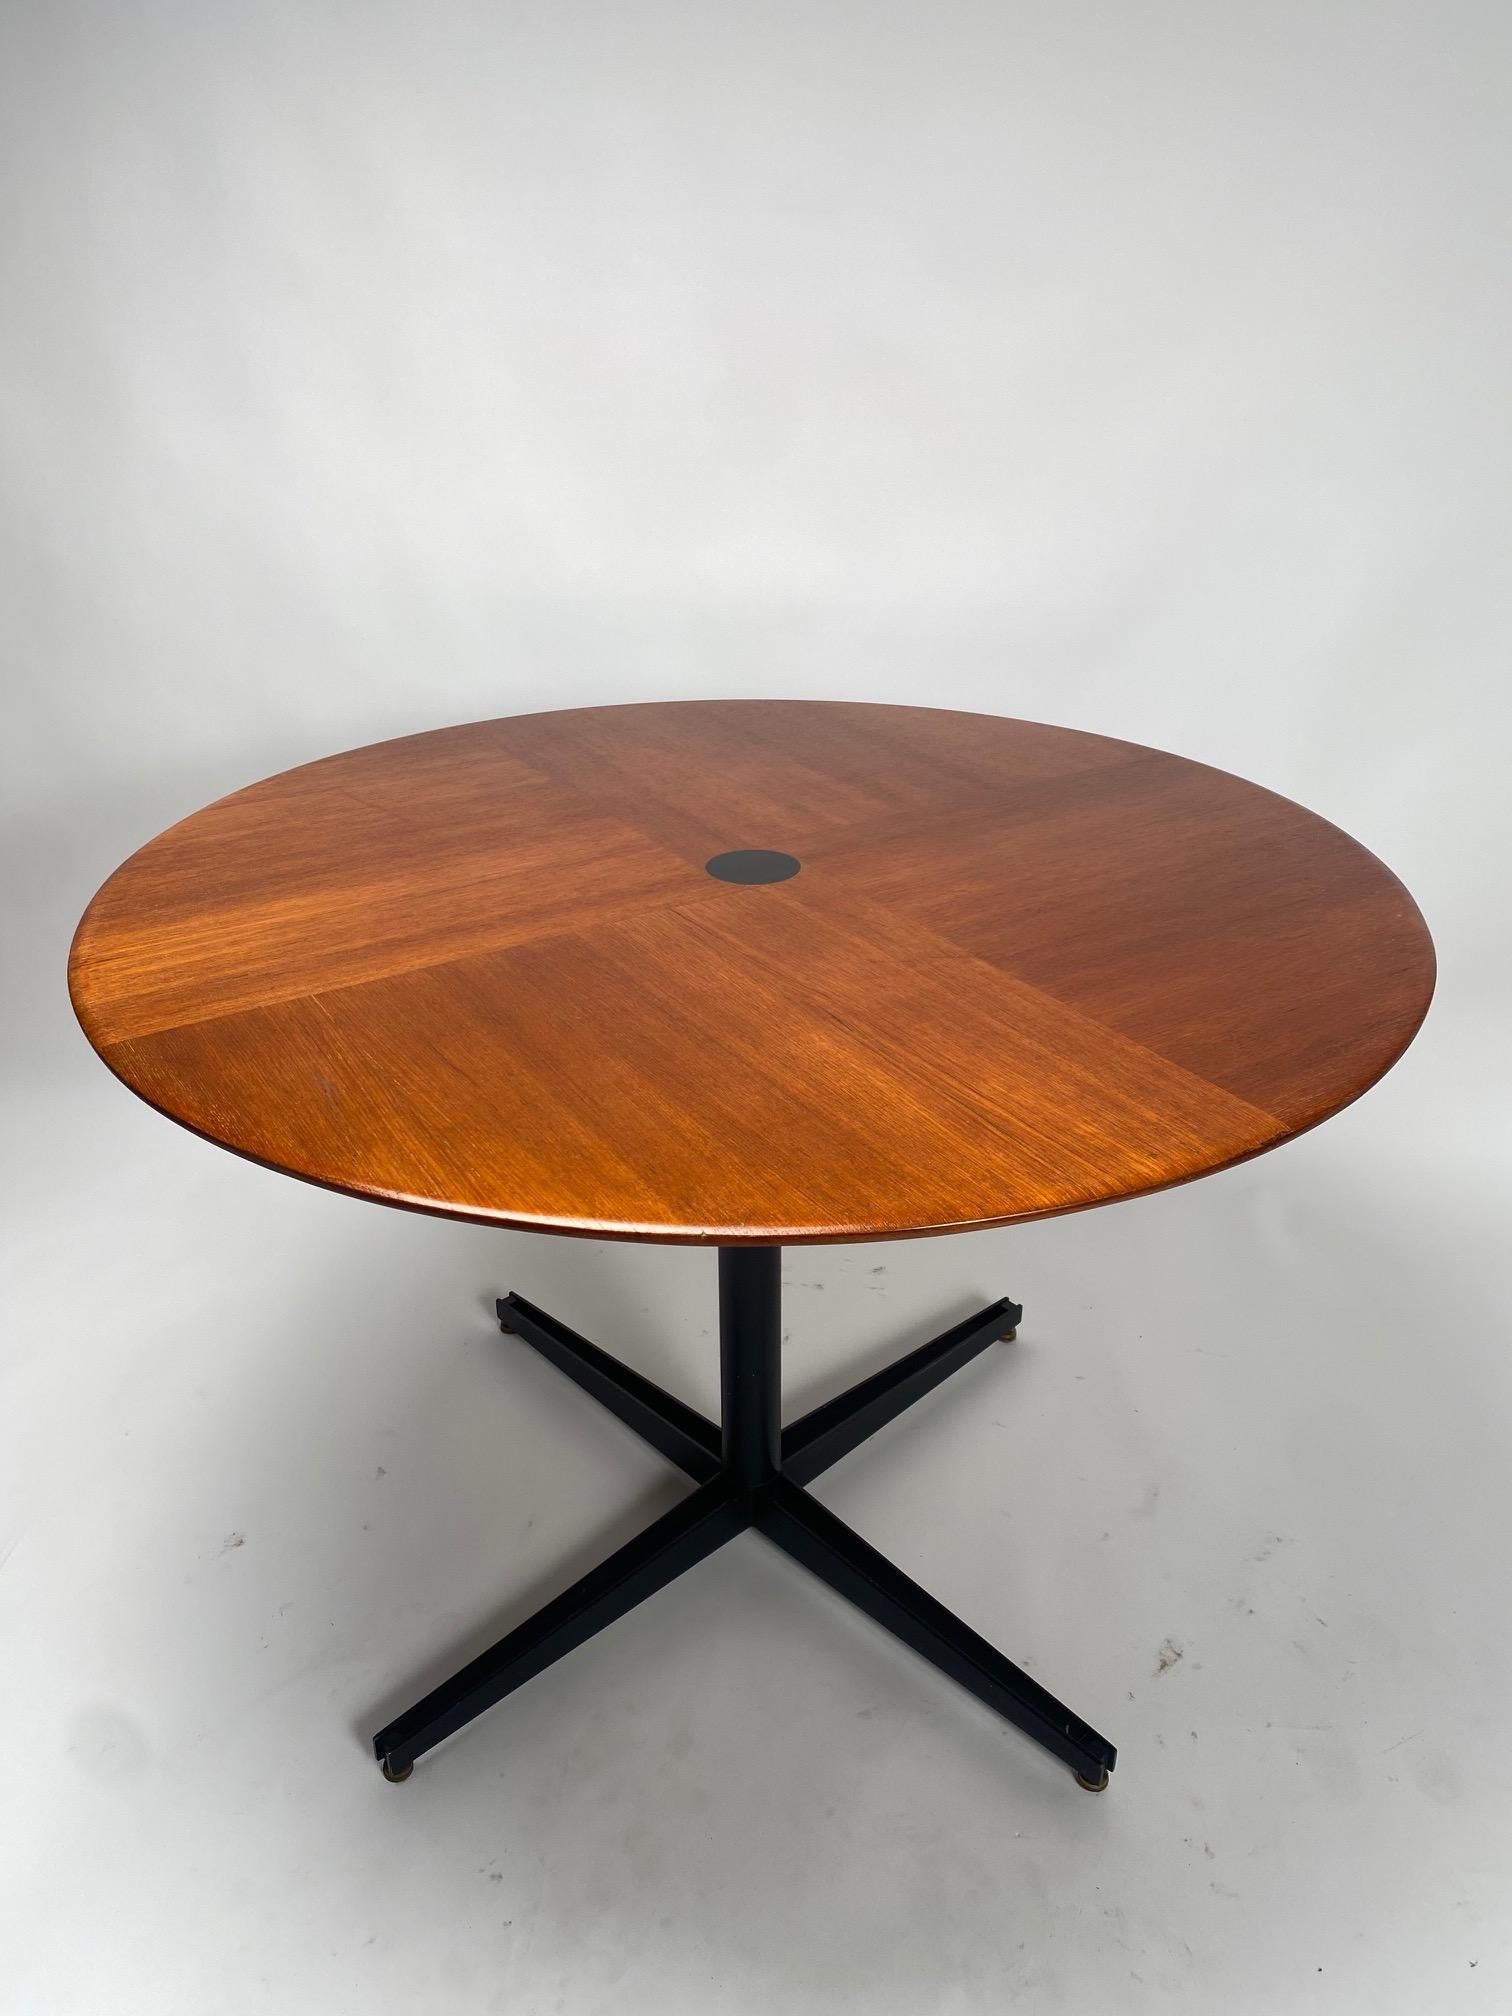 Osvaldo Borsani, Tecno T41, table ronde en bois de rose, table de salle à manger ou table basse, Italie, 1958

Il s'agit de l'une des tables les plus élégantes et les plus raffinées du design italien des années 1950, créée par le célèbre architecte